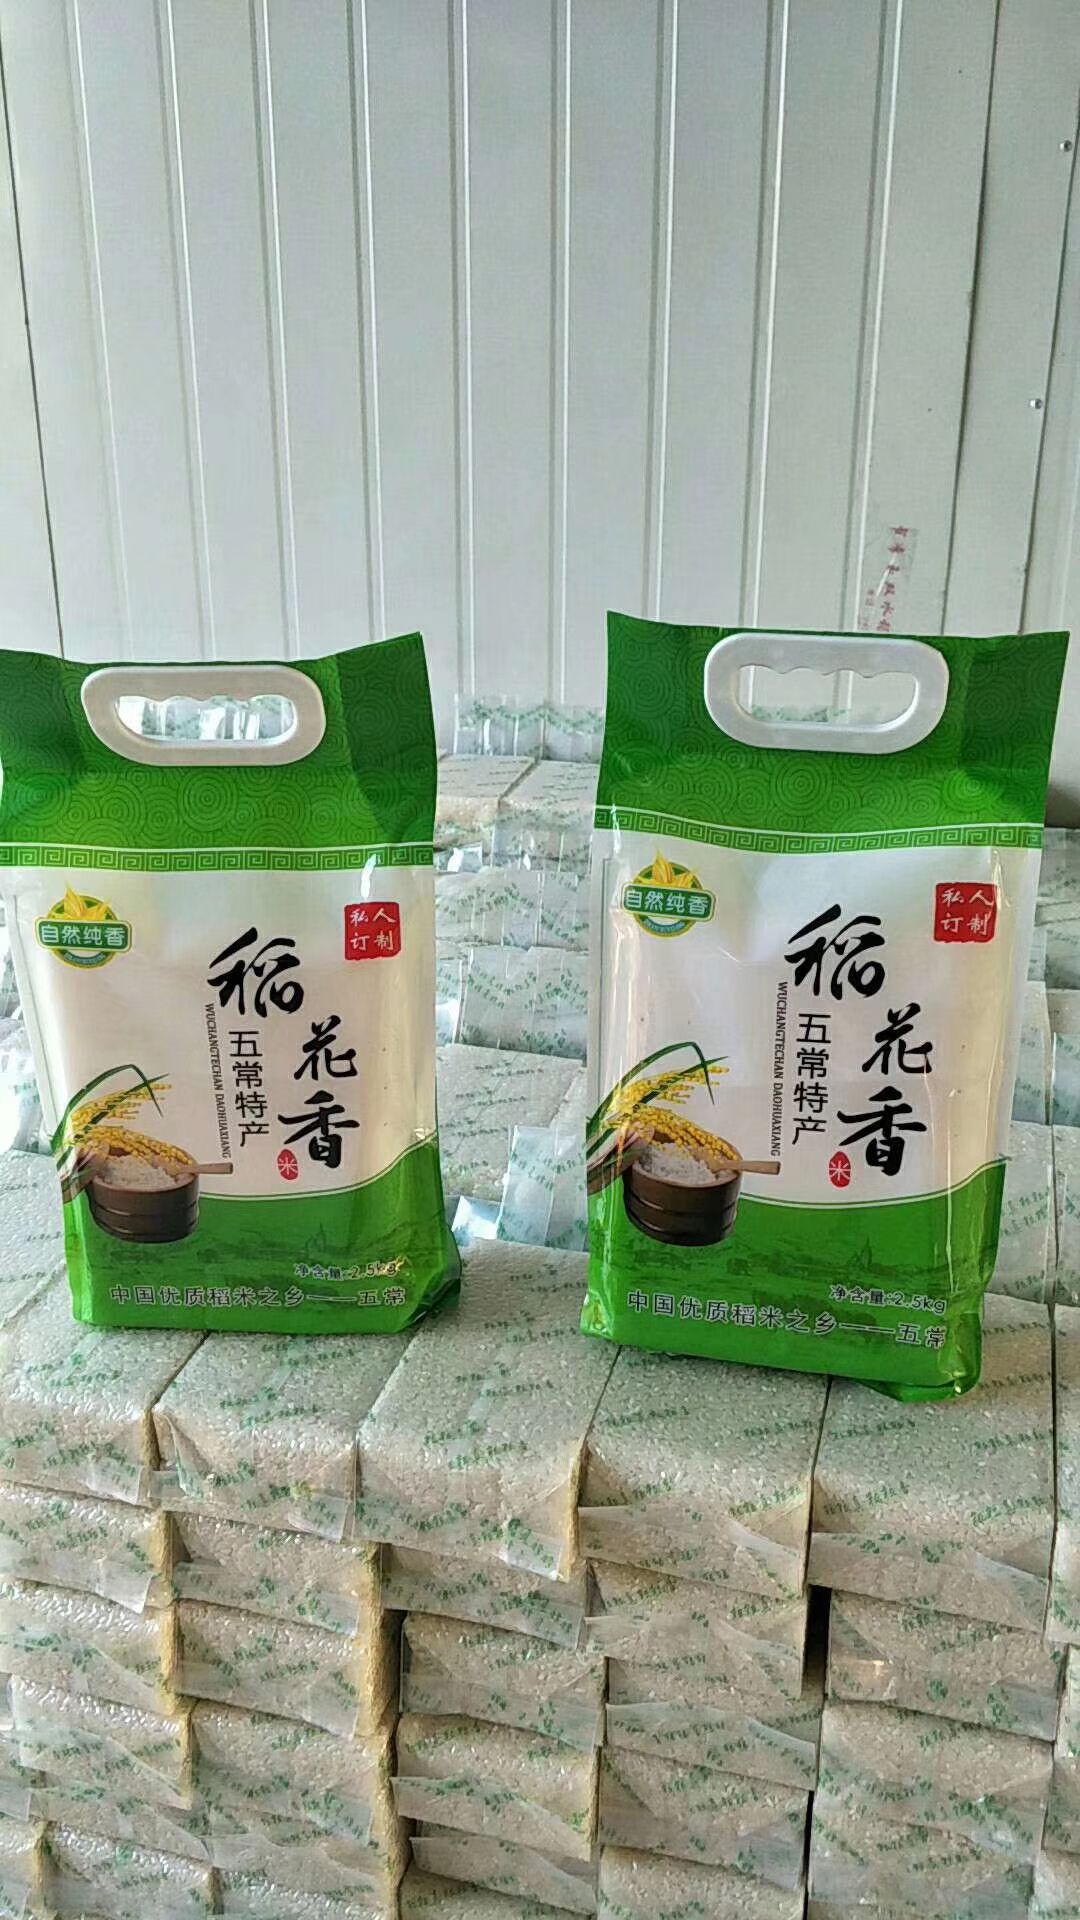 [五常大米批发]五常大米 一等品 晚稻 粳米 价格98元/袋 